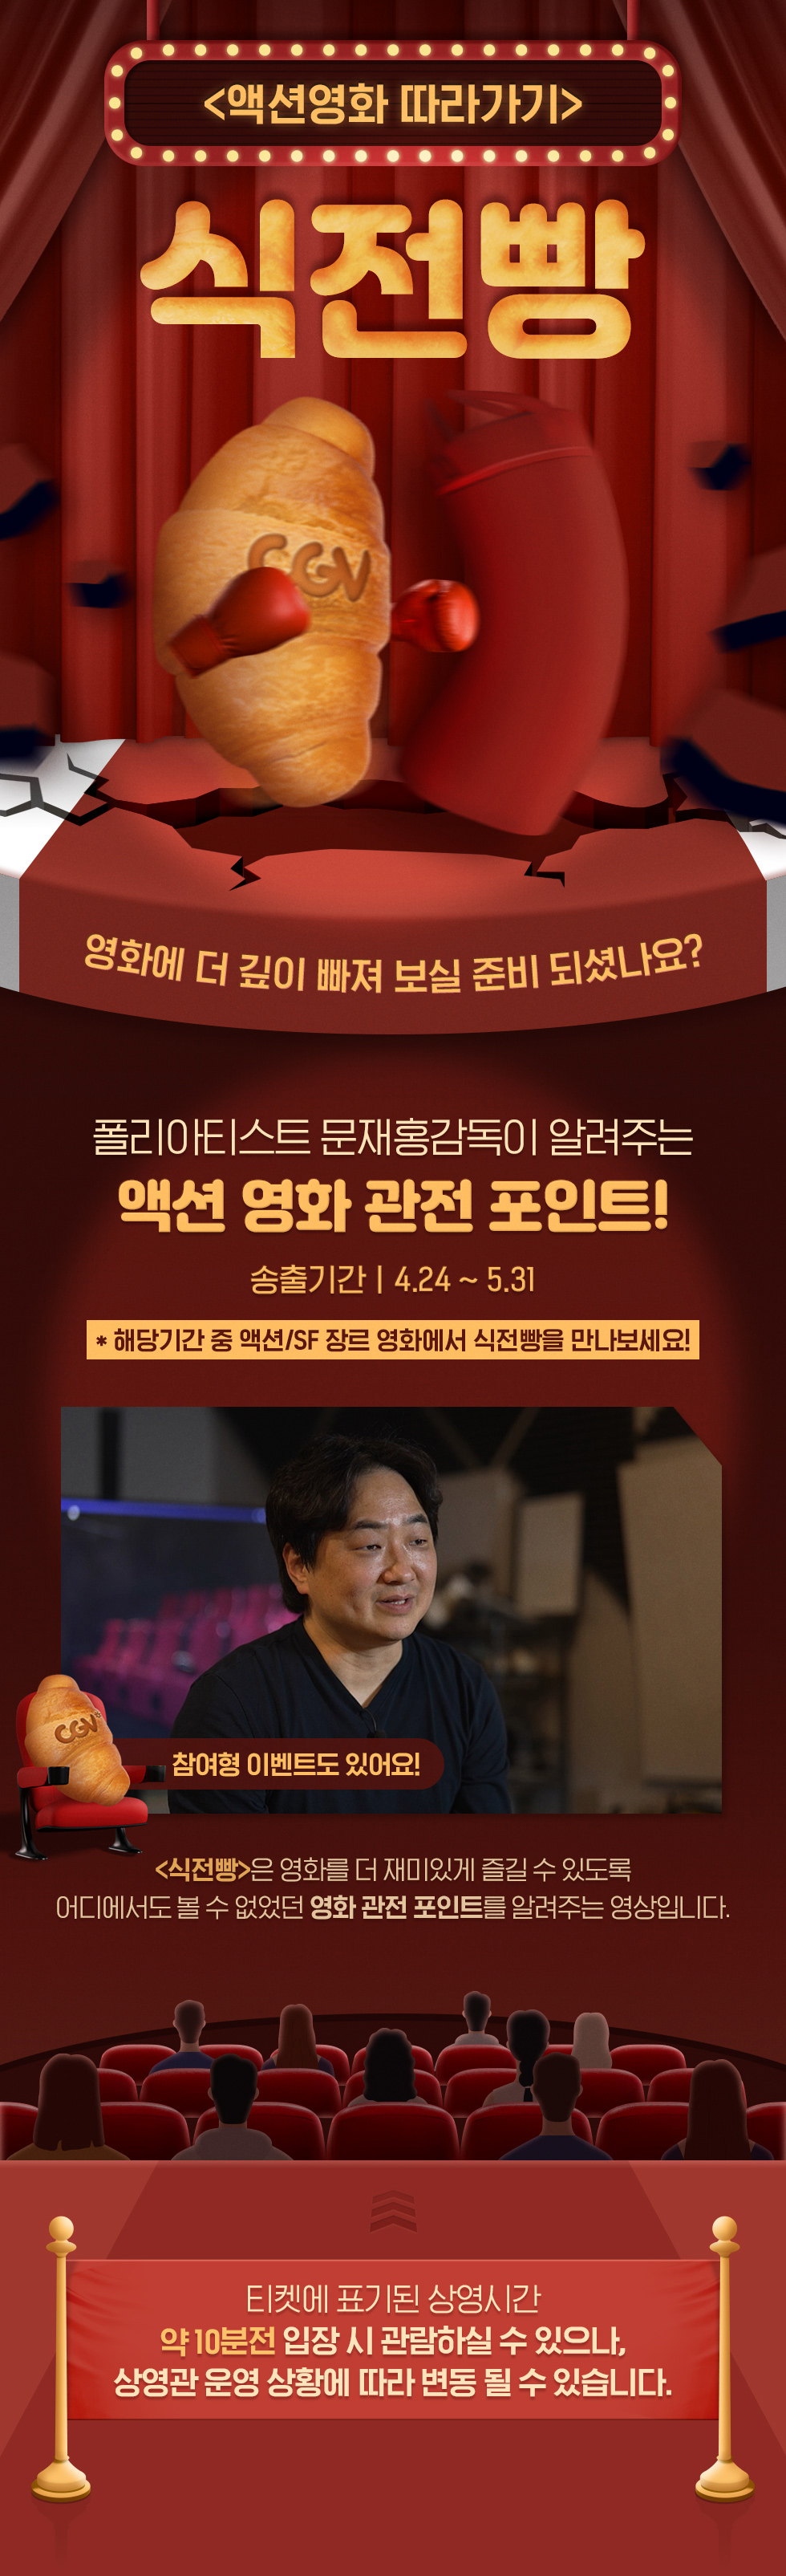 스페셜이벤트 액션영화 CGV식전빵 제공